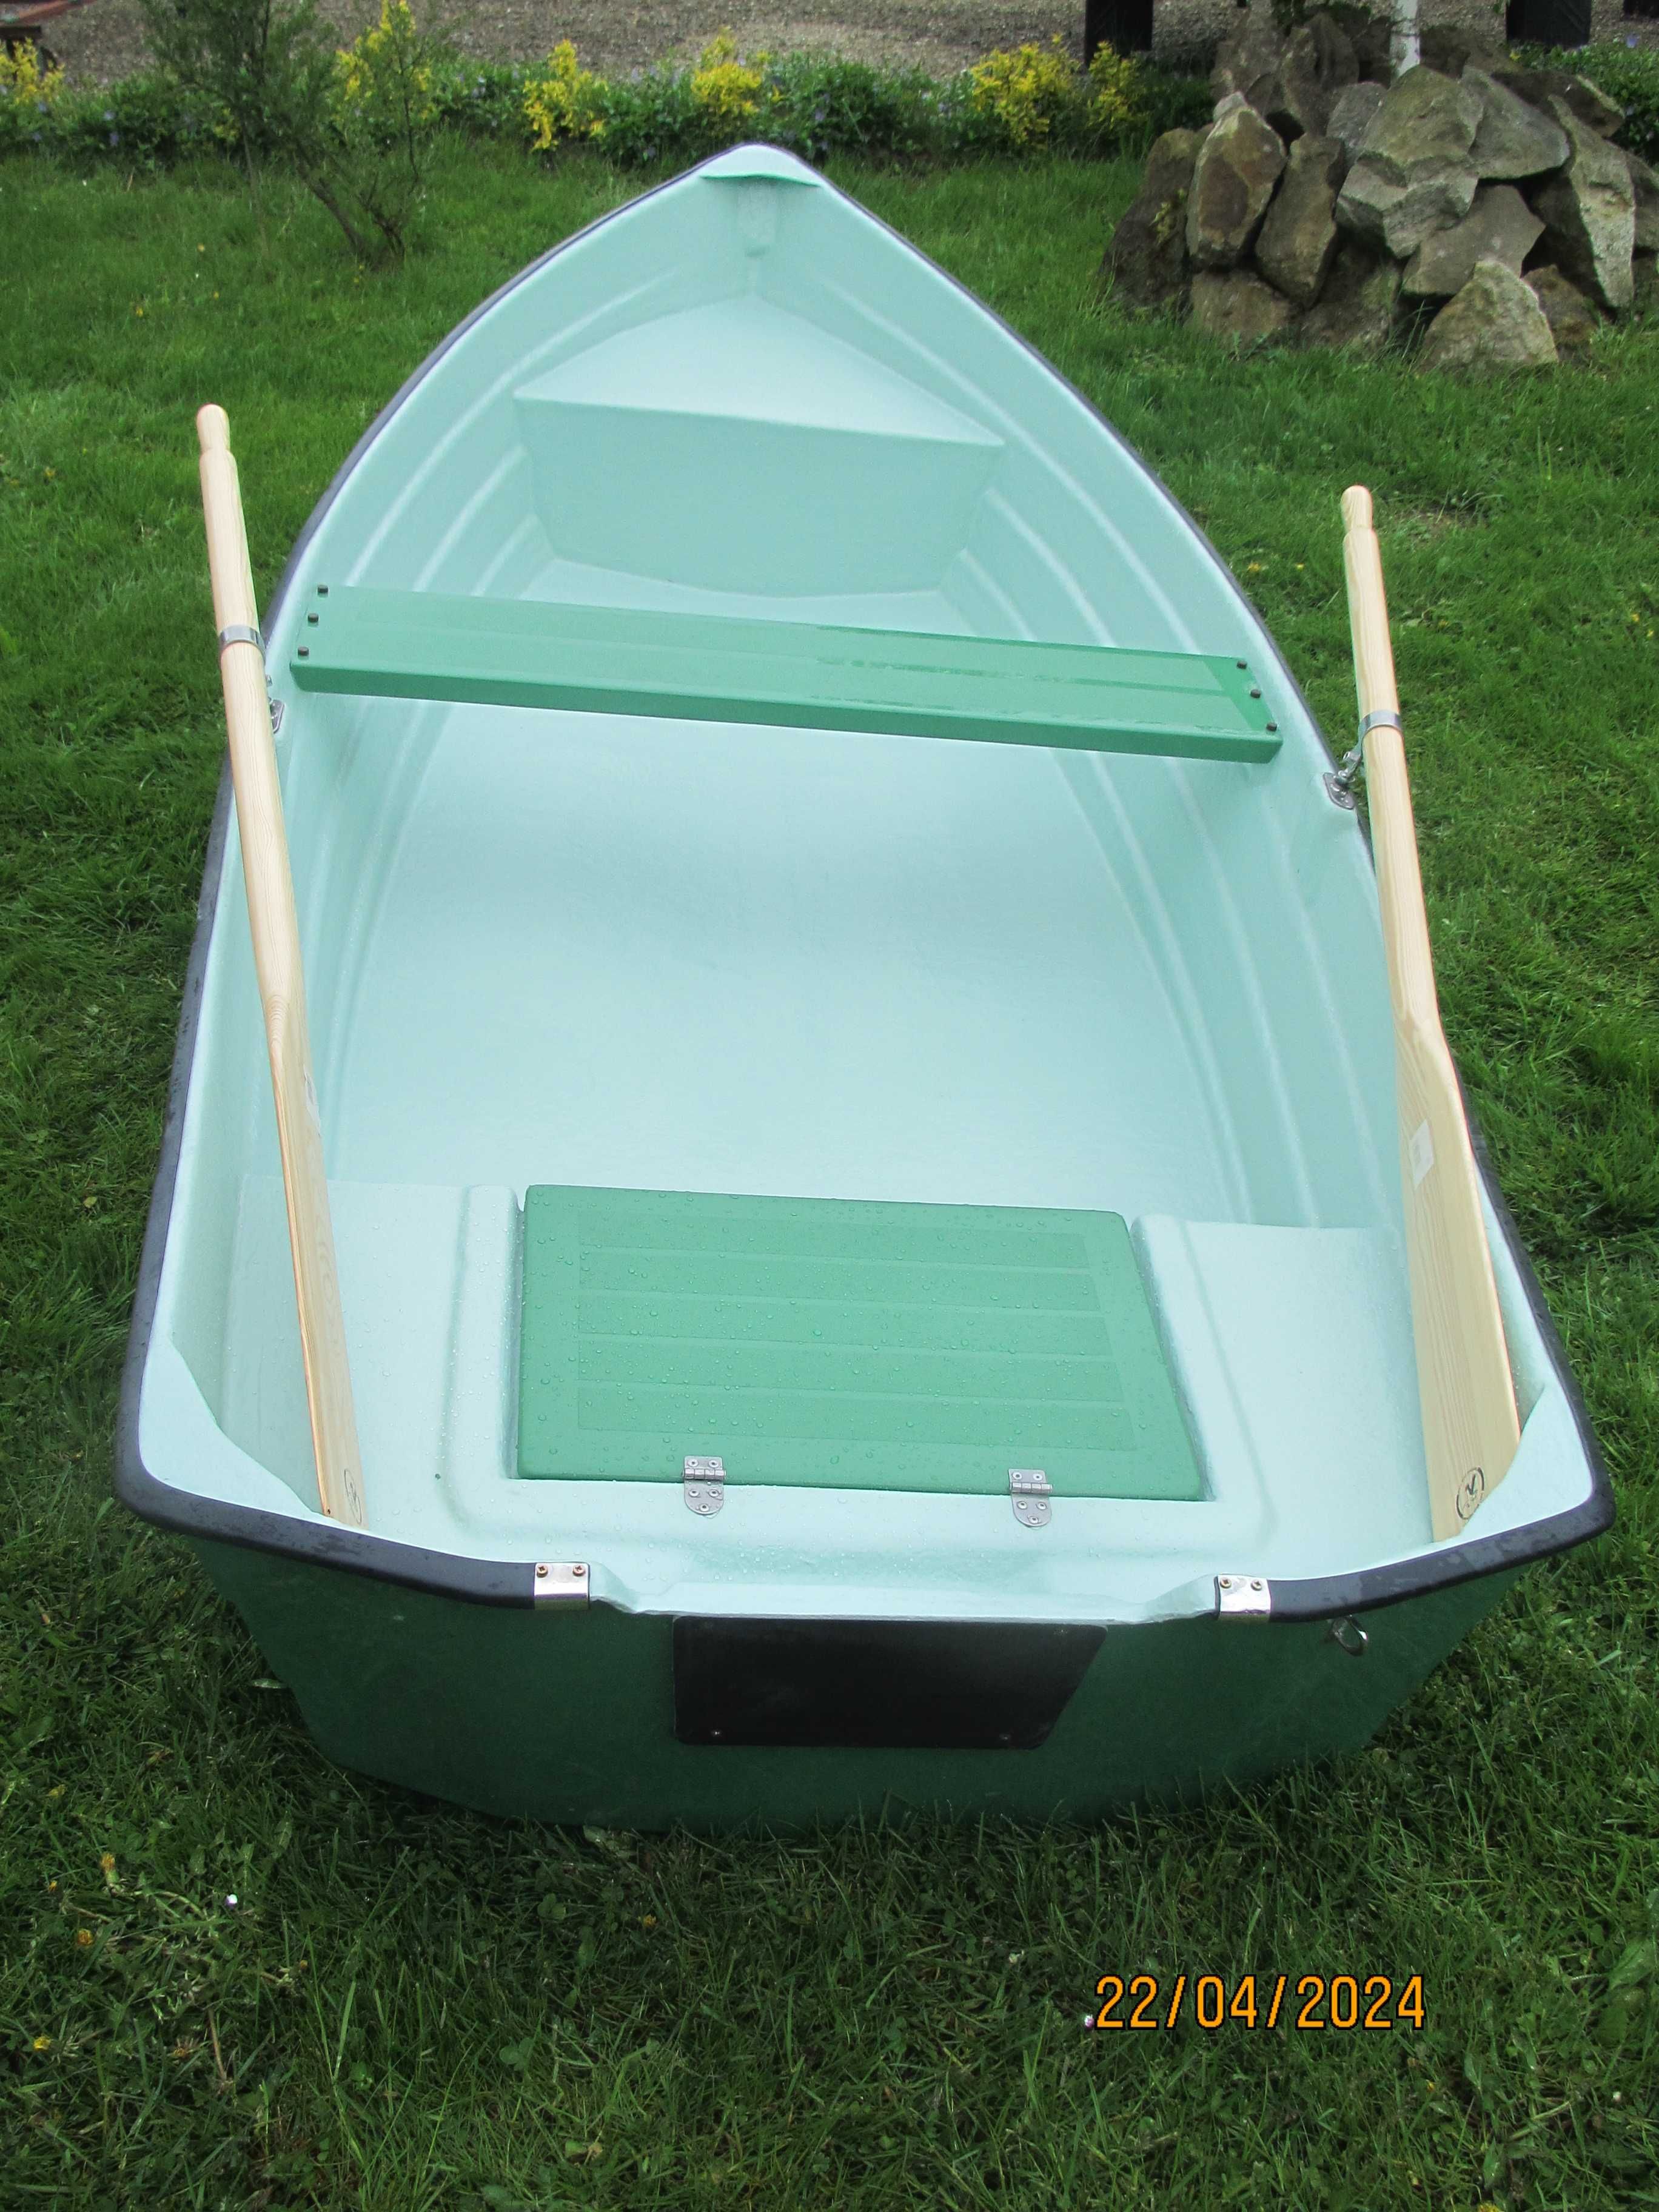 Łódka łódz wiosłowa rekreacyjna motorowa wiosła dulki